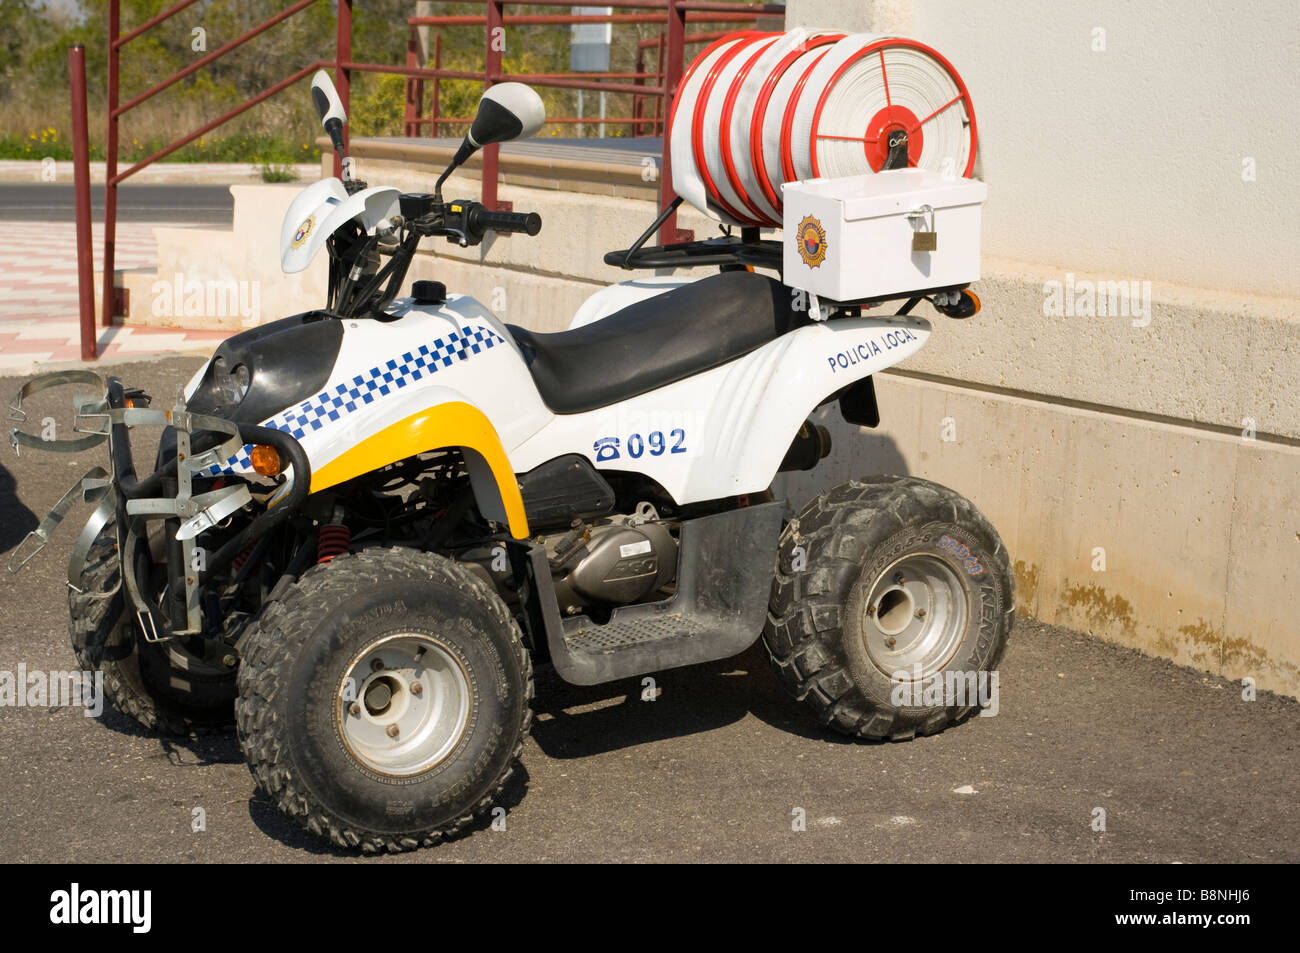 Spanischen lokalen Polizei Quad Bike Motorrad Spanien Stockfoto